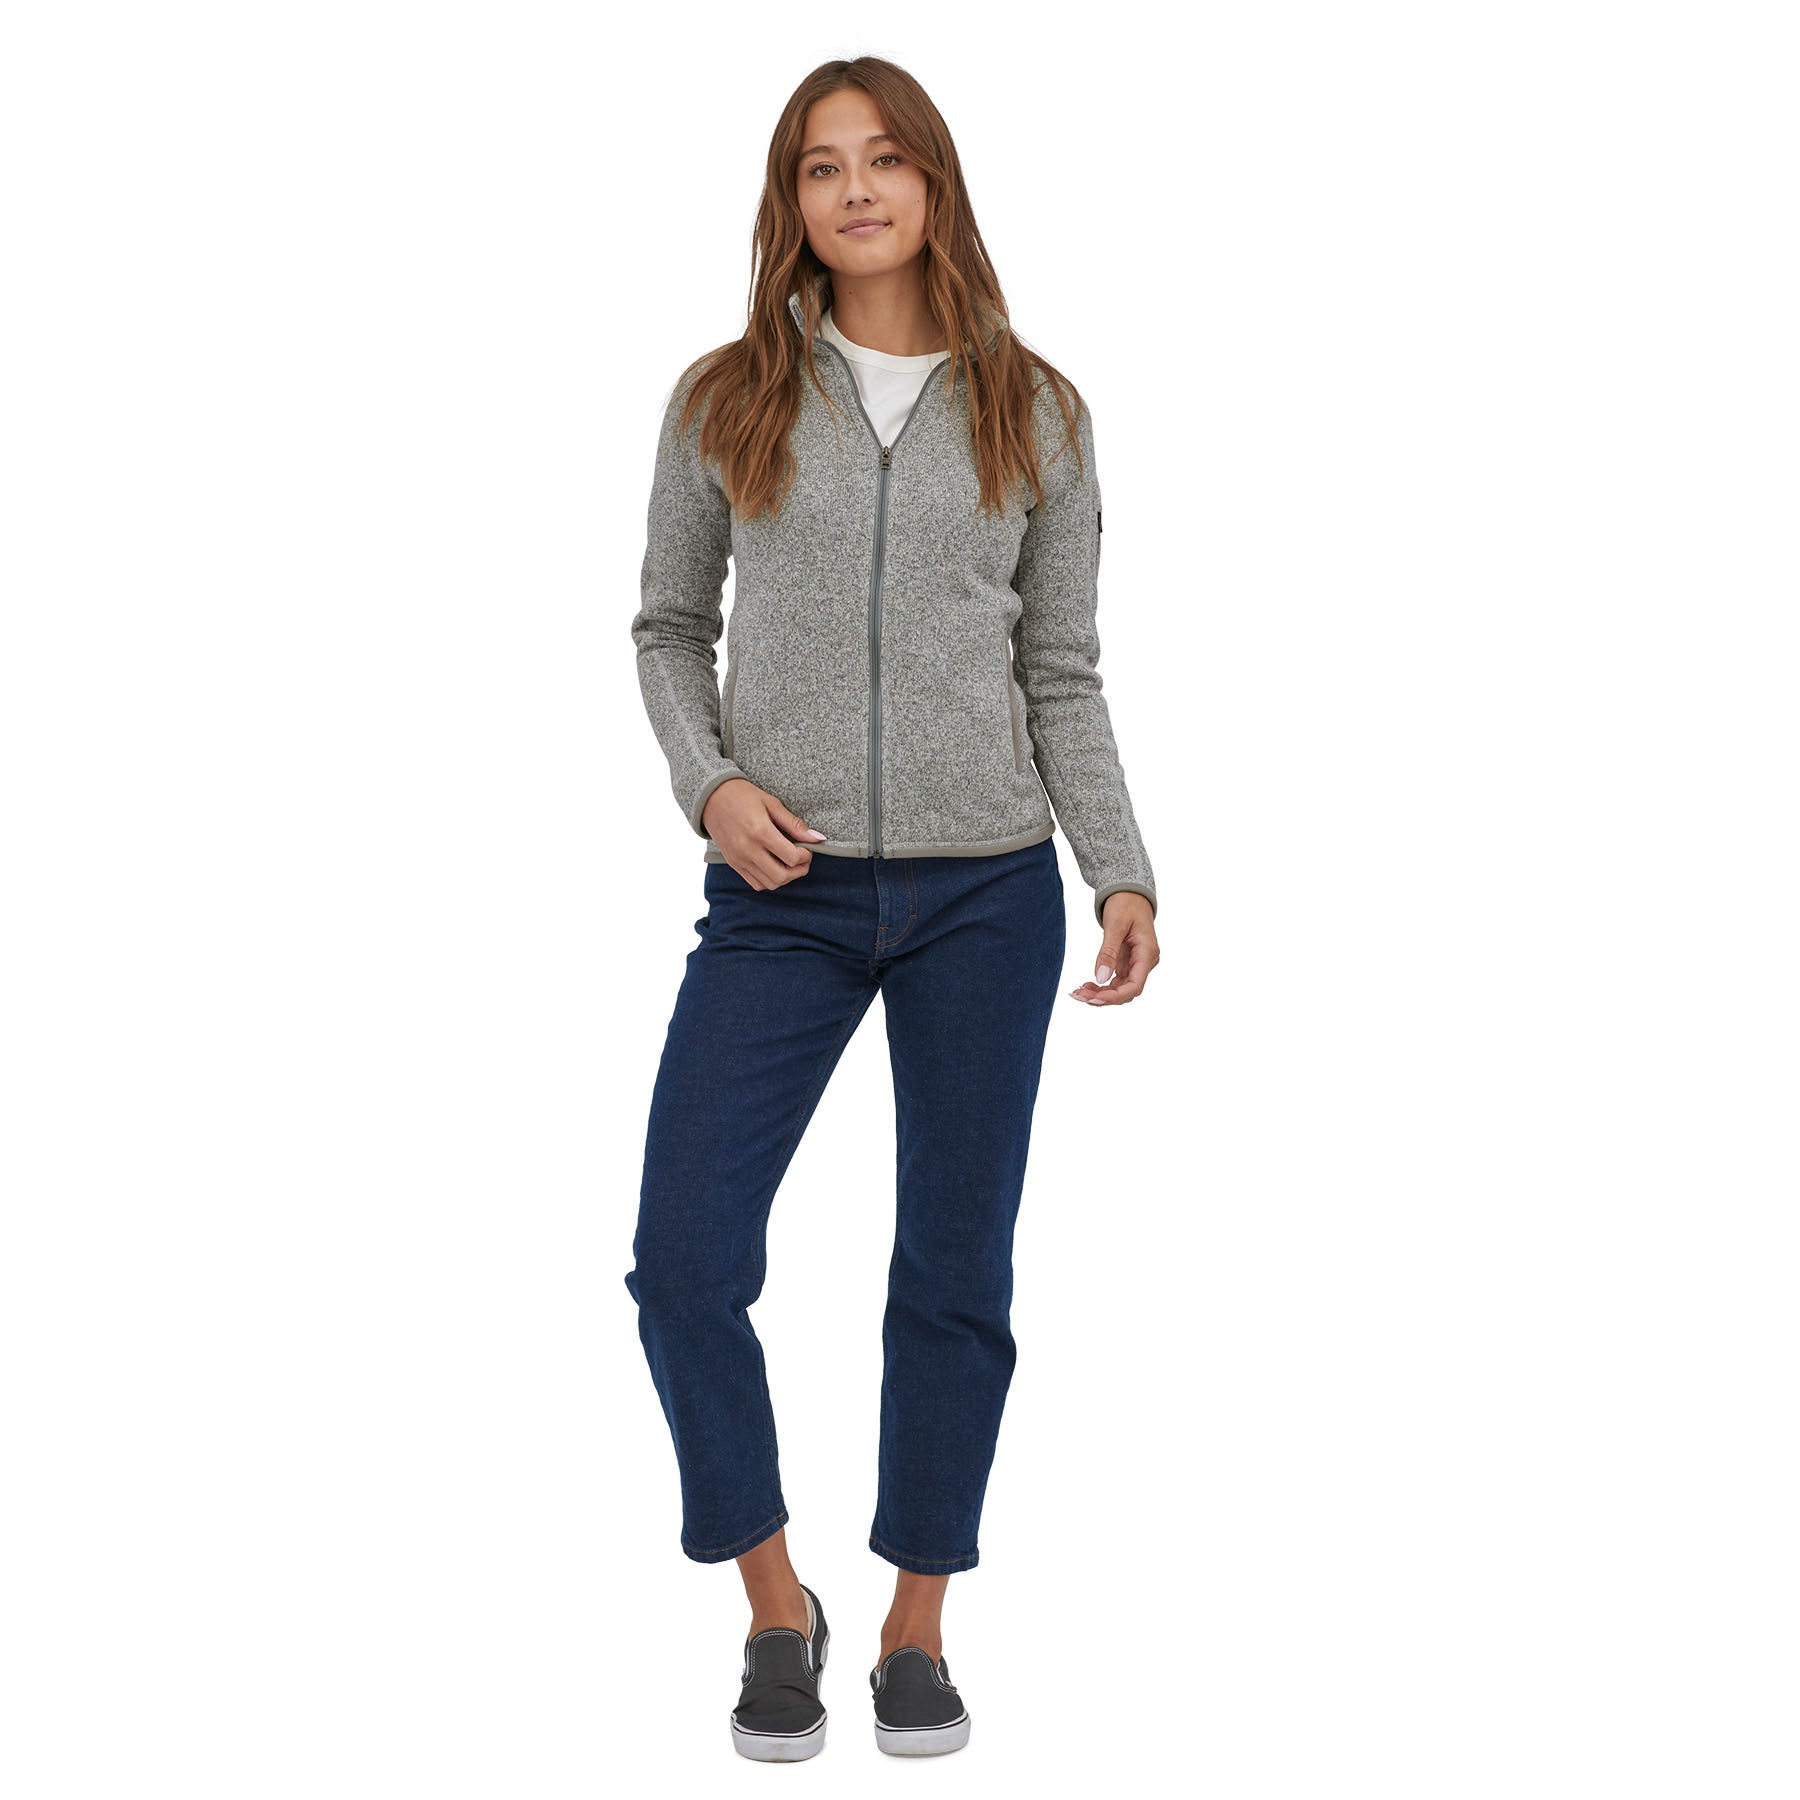 Women's Better Sweater® Fleece Jacket